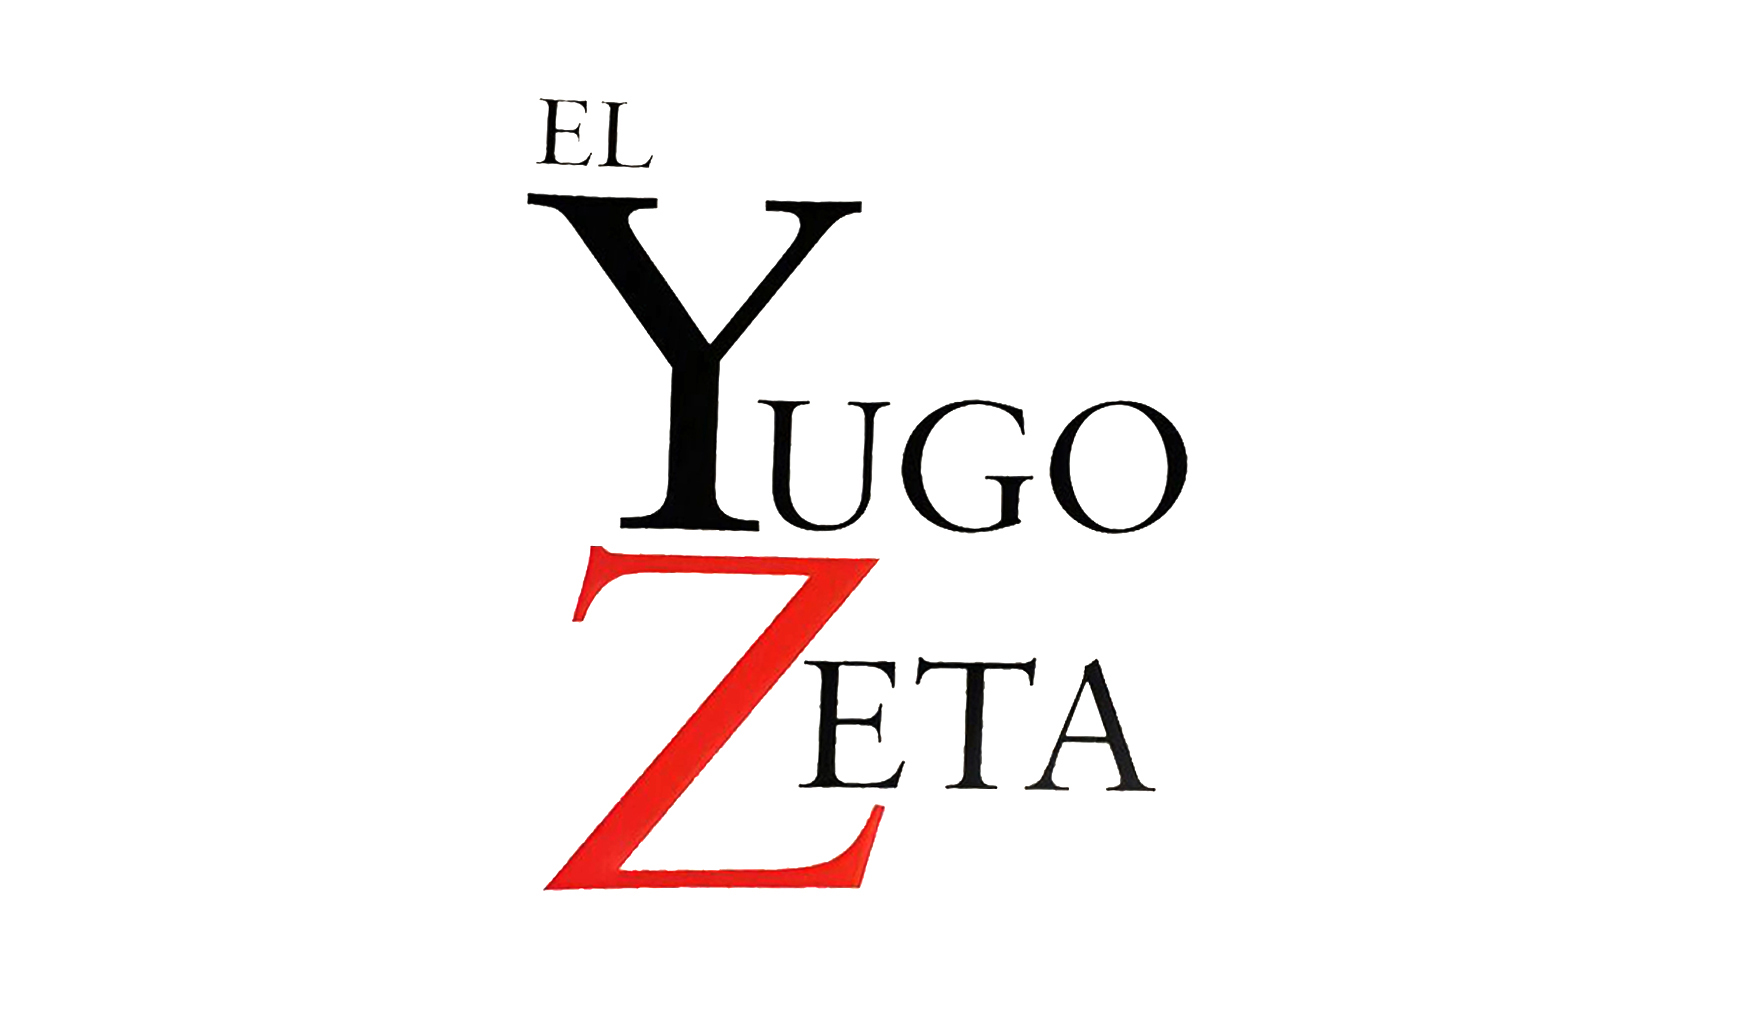 El Yugo Zeta, Norte de Coahuila (2010-2011)